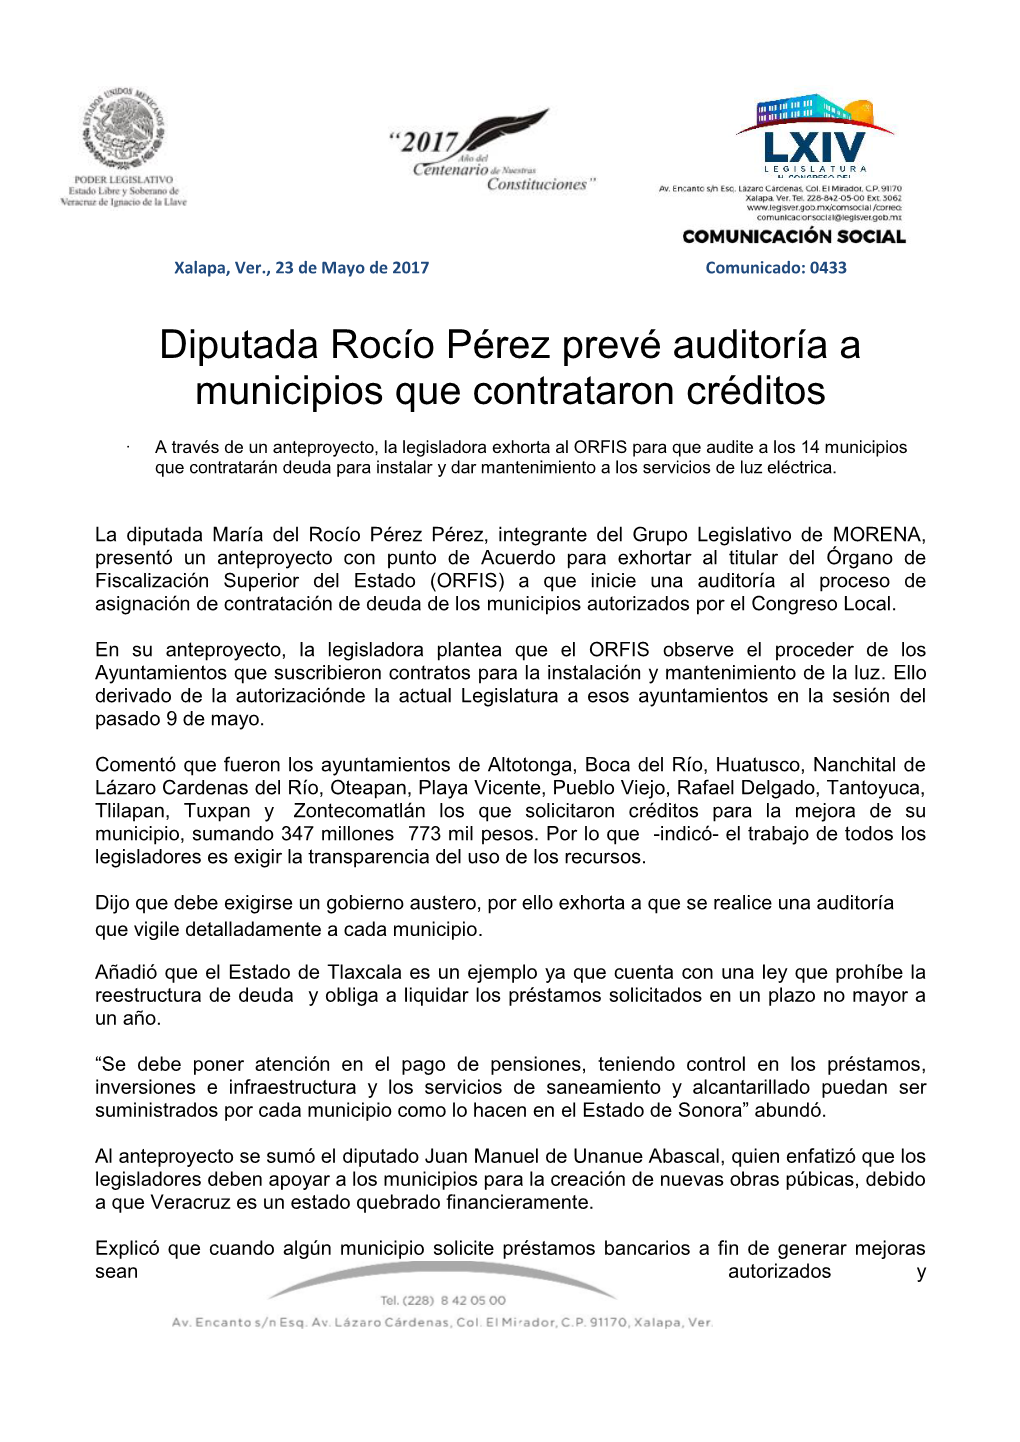 Diputada Rocío Pérez Prevé Auditoría a Municipios Que Contrataron Créditos